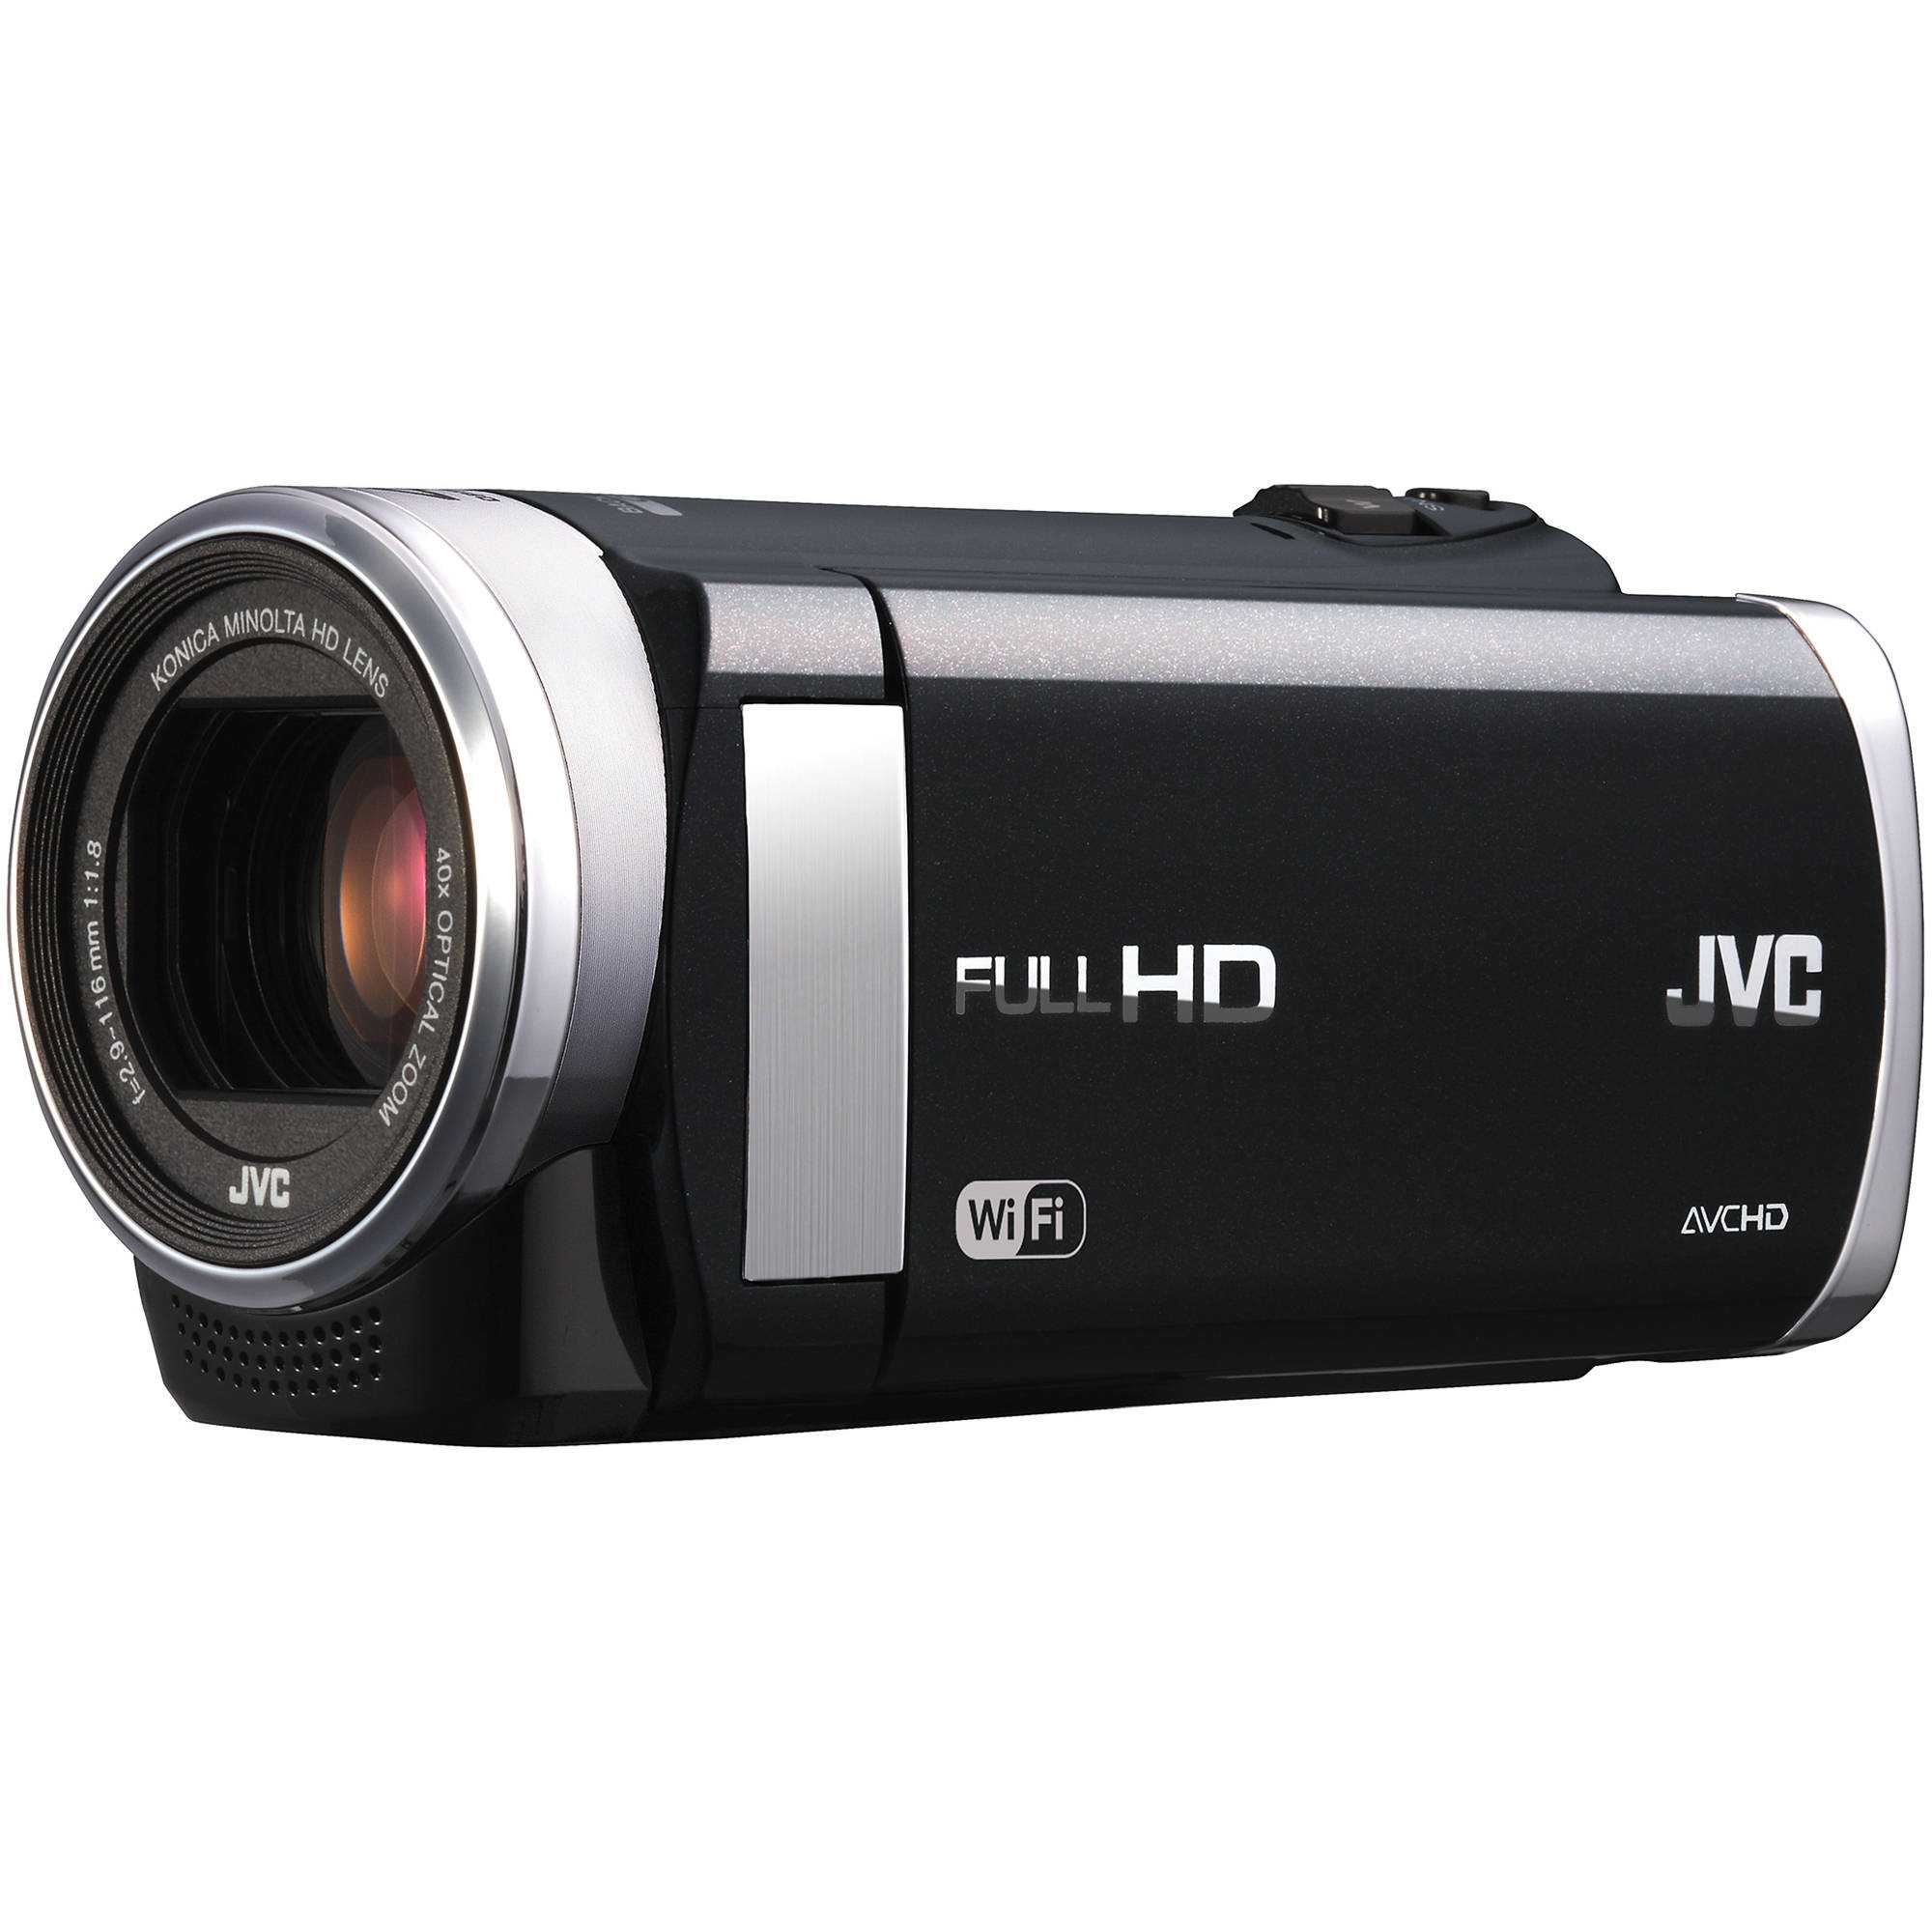 Jvc everio gz-vx715 - купить , скидки, цена, отзывы, обзор, характеристики - видеокамеры